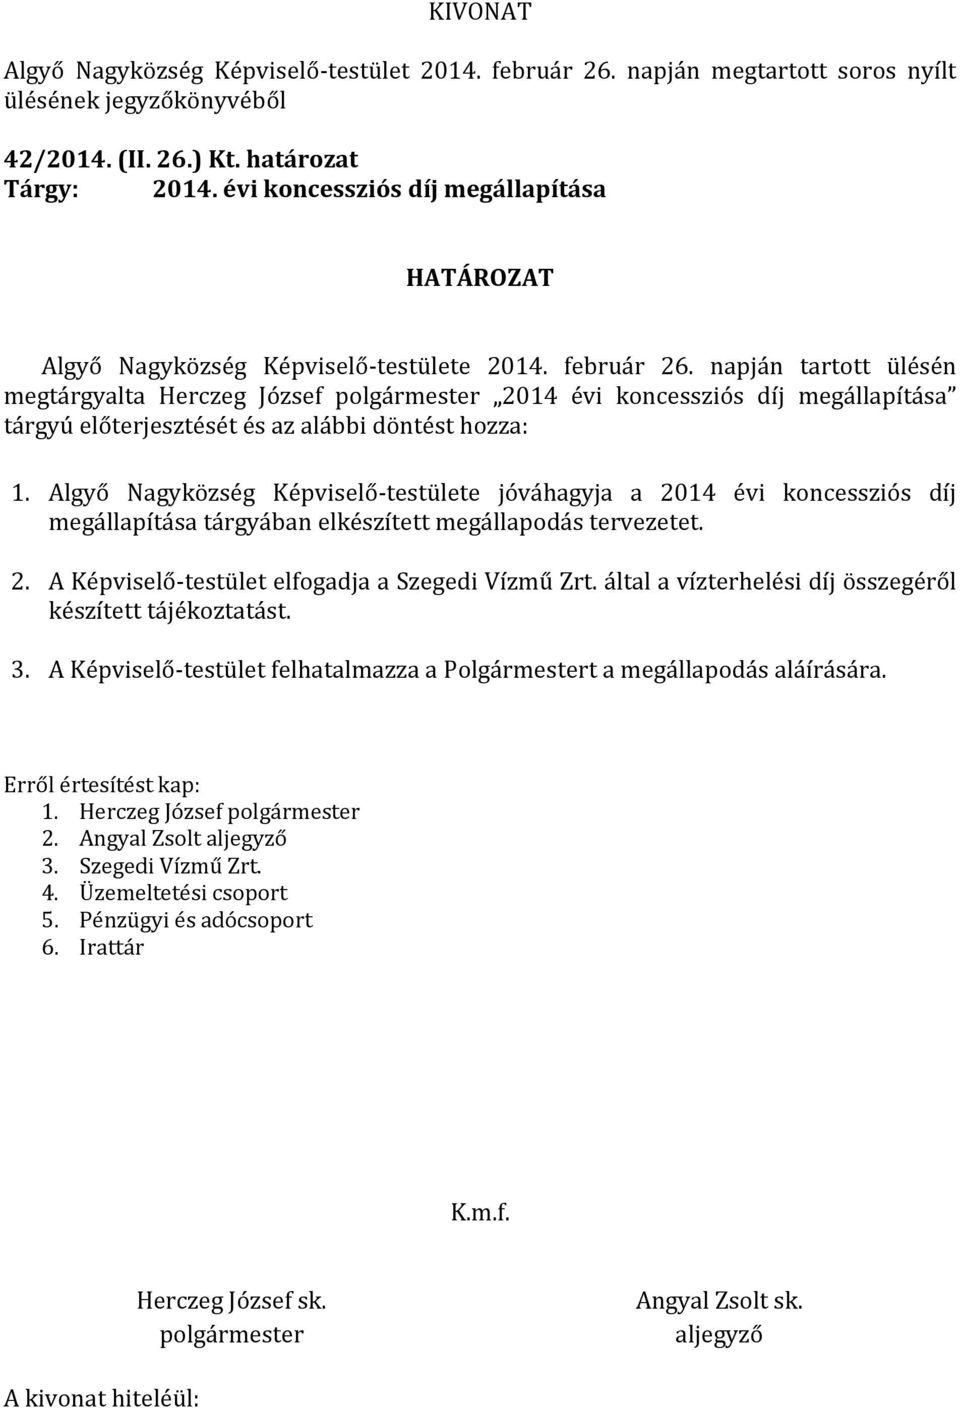 Algyő Nagyközség Képviselő-testülete jóváhagyja a 2014 évi koncessziós díj megállapítása tárgyában elkészített megállapodás tervezetet. 2. A Képviselő-testület elfogadja a Szegedi Vízmű Zrt.